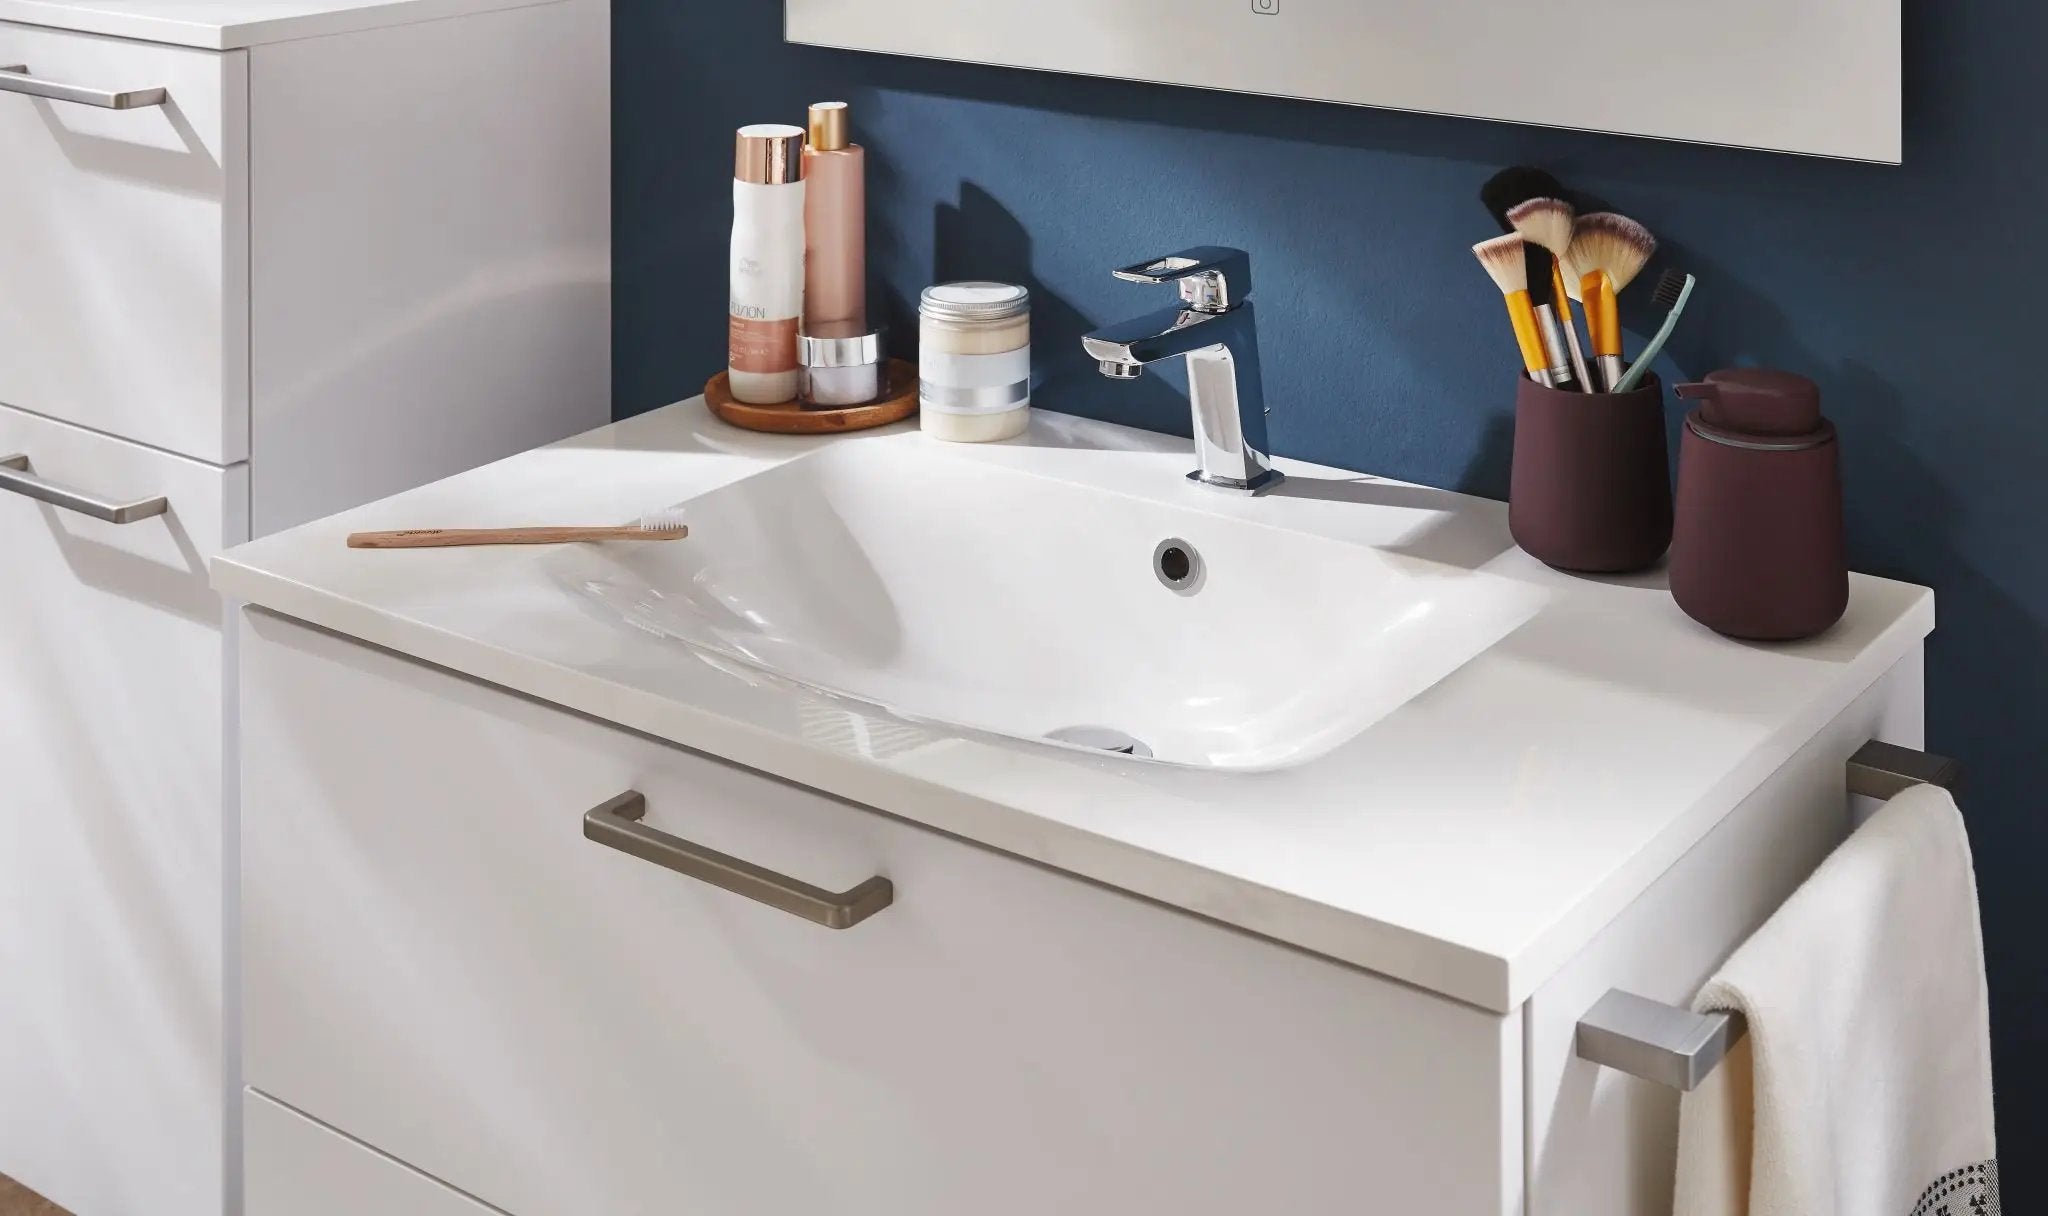 Eleganter Badezimmer-Waschtisch von Marmite in Weiß hochglanz, 80cm Breite. Ideal für stilvolle Badausstattung. Jetzt Qualität bei Cityküchen24 entdecken!